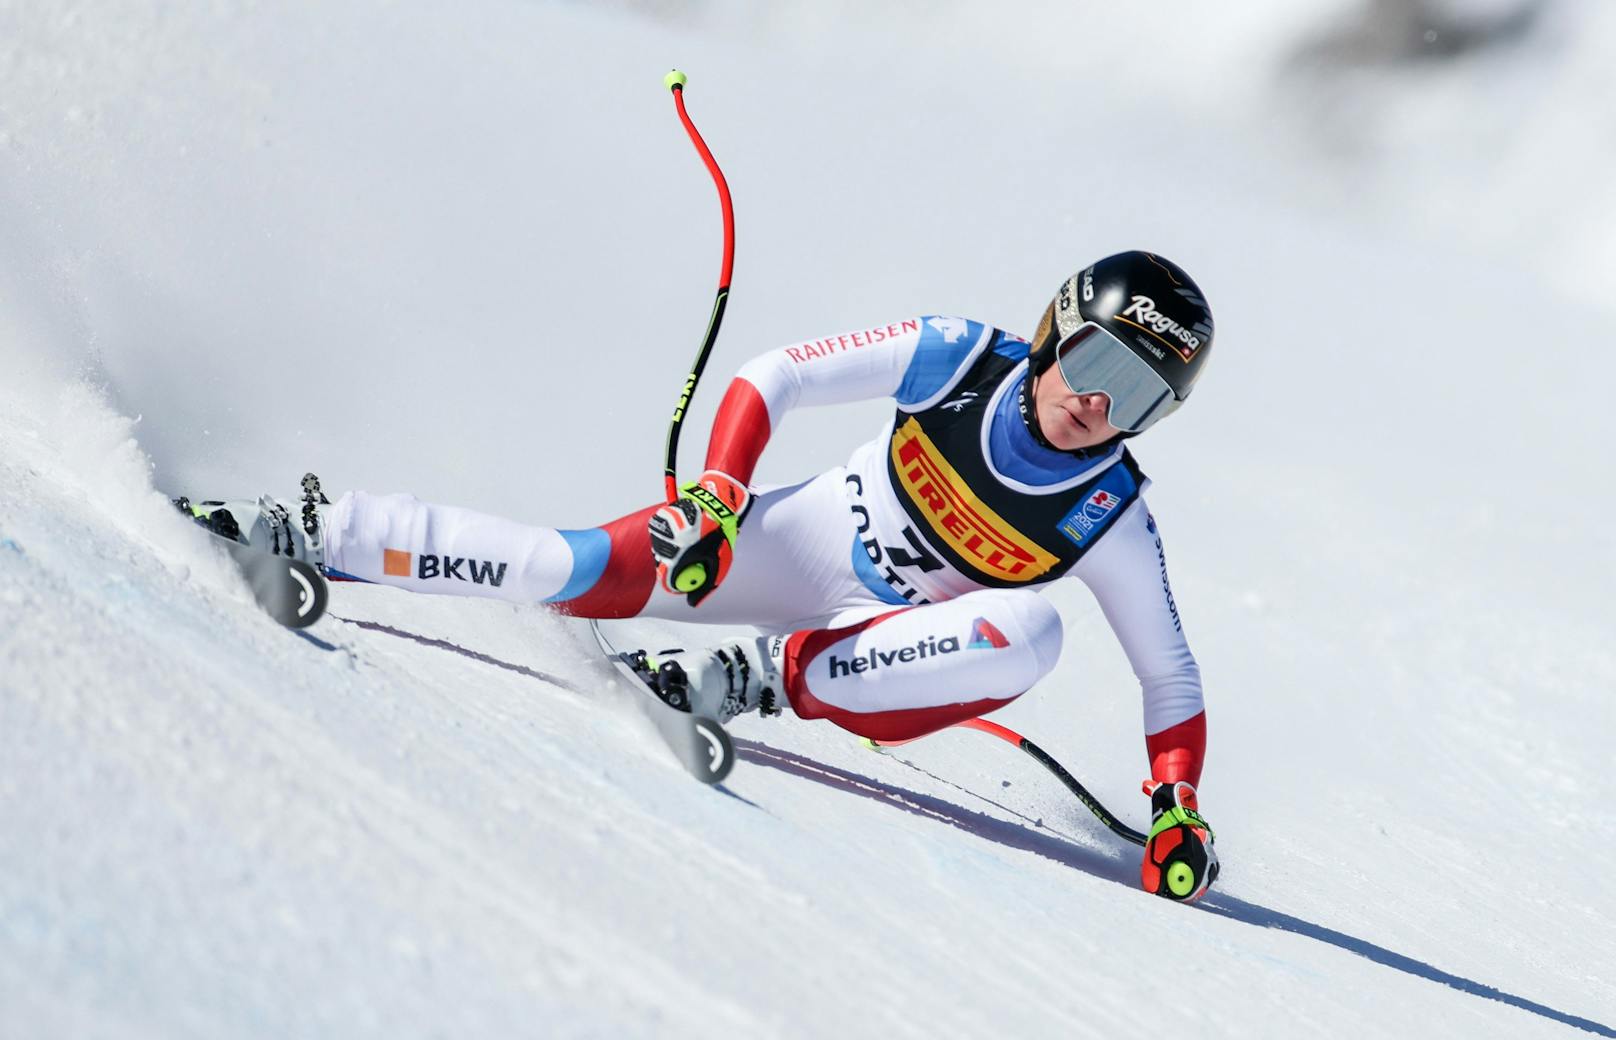 Die Ski-WM in Cortina begann mit einem Favoritensieg. Lara Gut-Behrami holte im Super-G die Gold-Medaille. Österreichs Damen gingen leer aus. Tamara Tippler wurde Siebente.